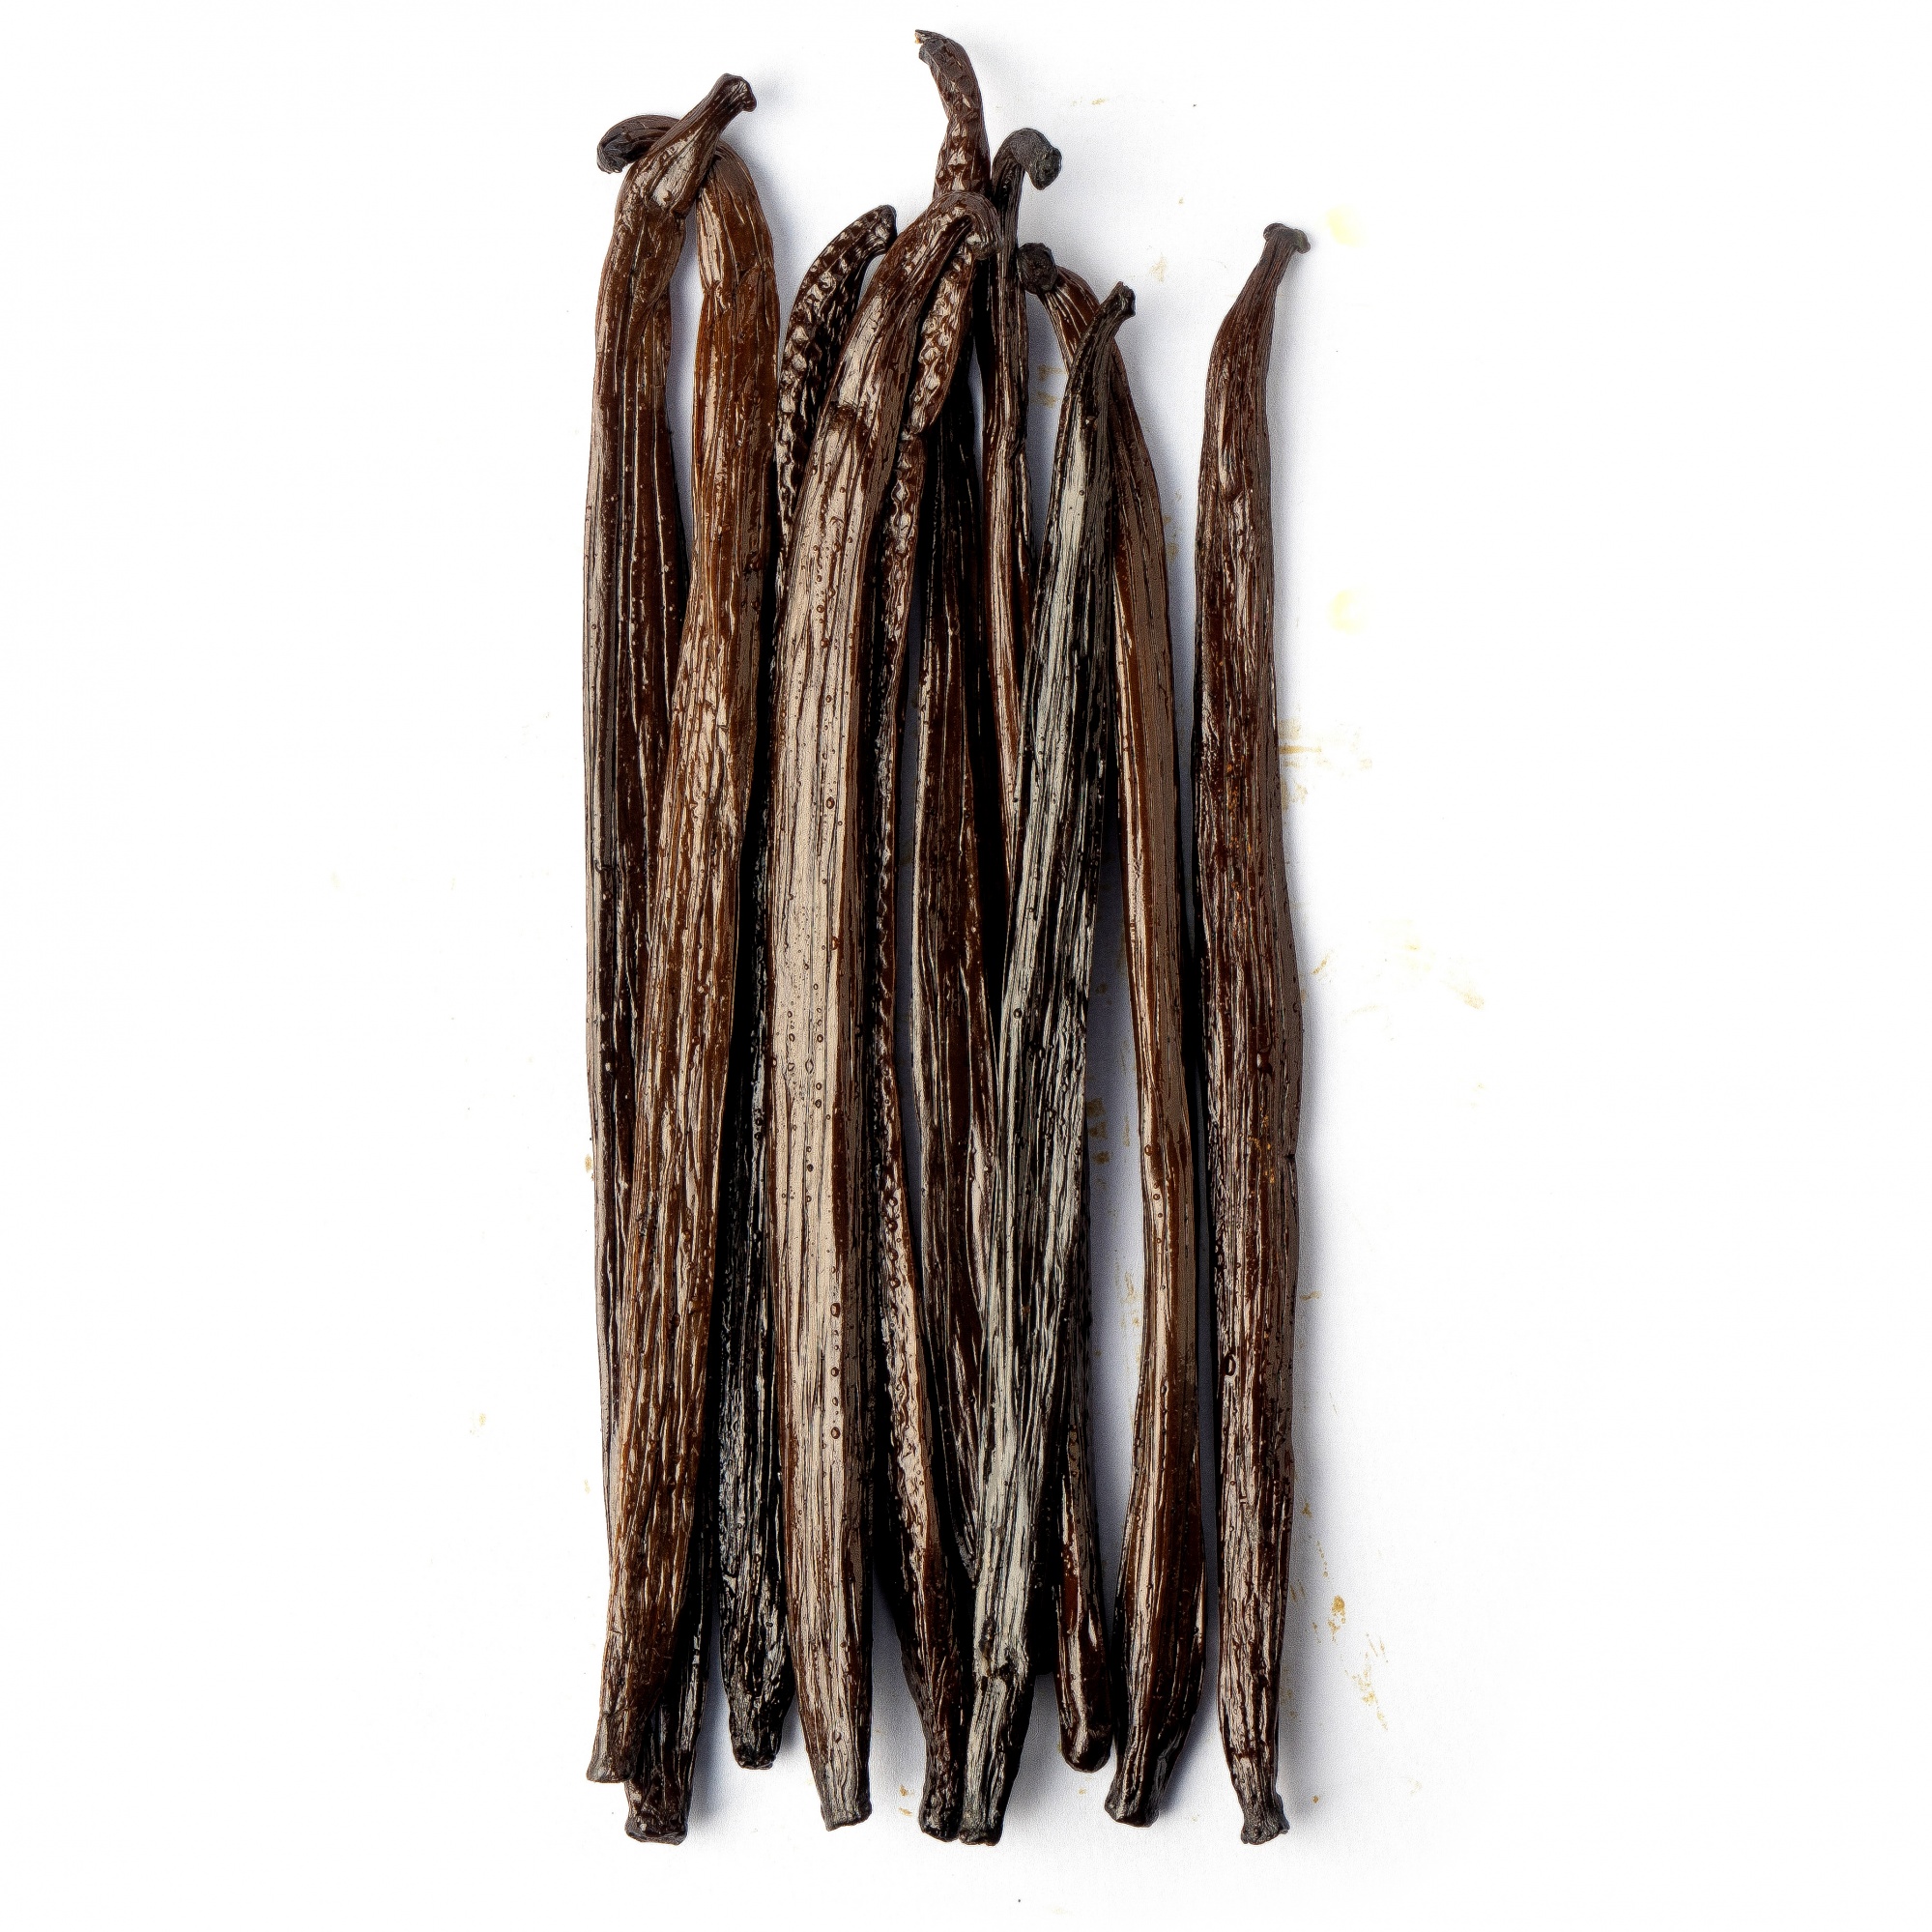 Натуральная ваниль Гурмэ в стручках 14-18 см, Уганда, 50 г  | Фото — Магазин Andy Chef  1